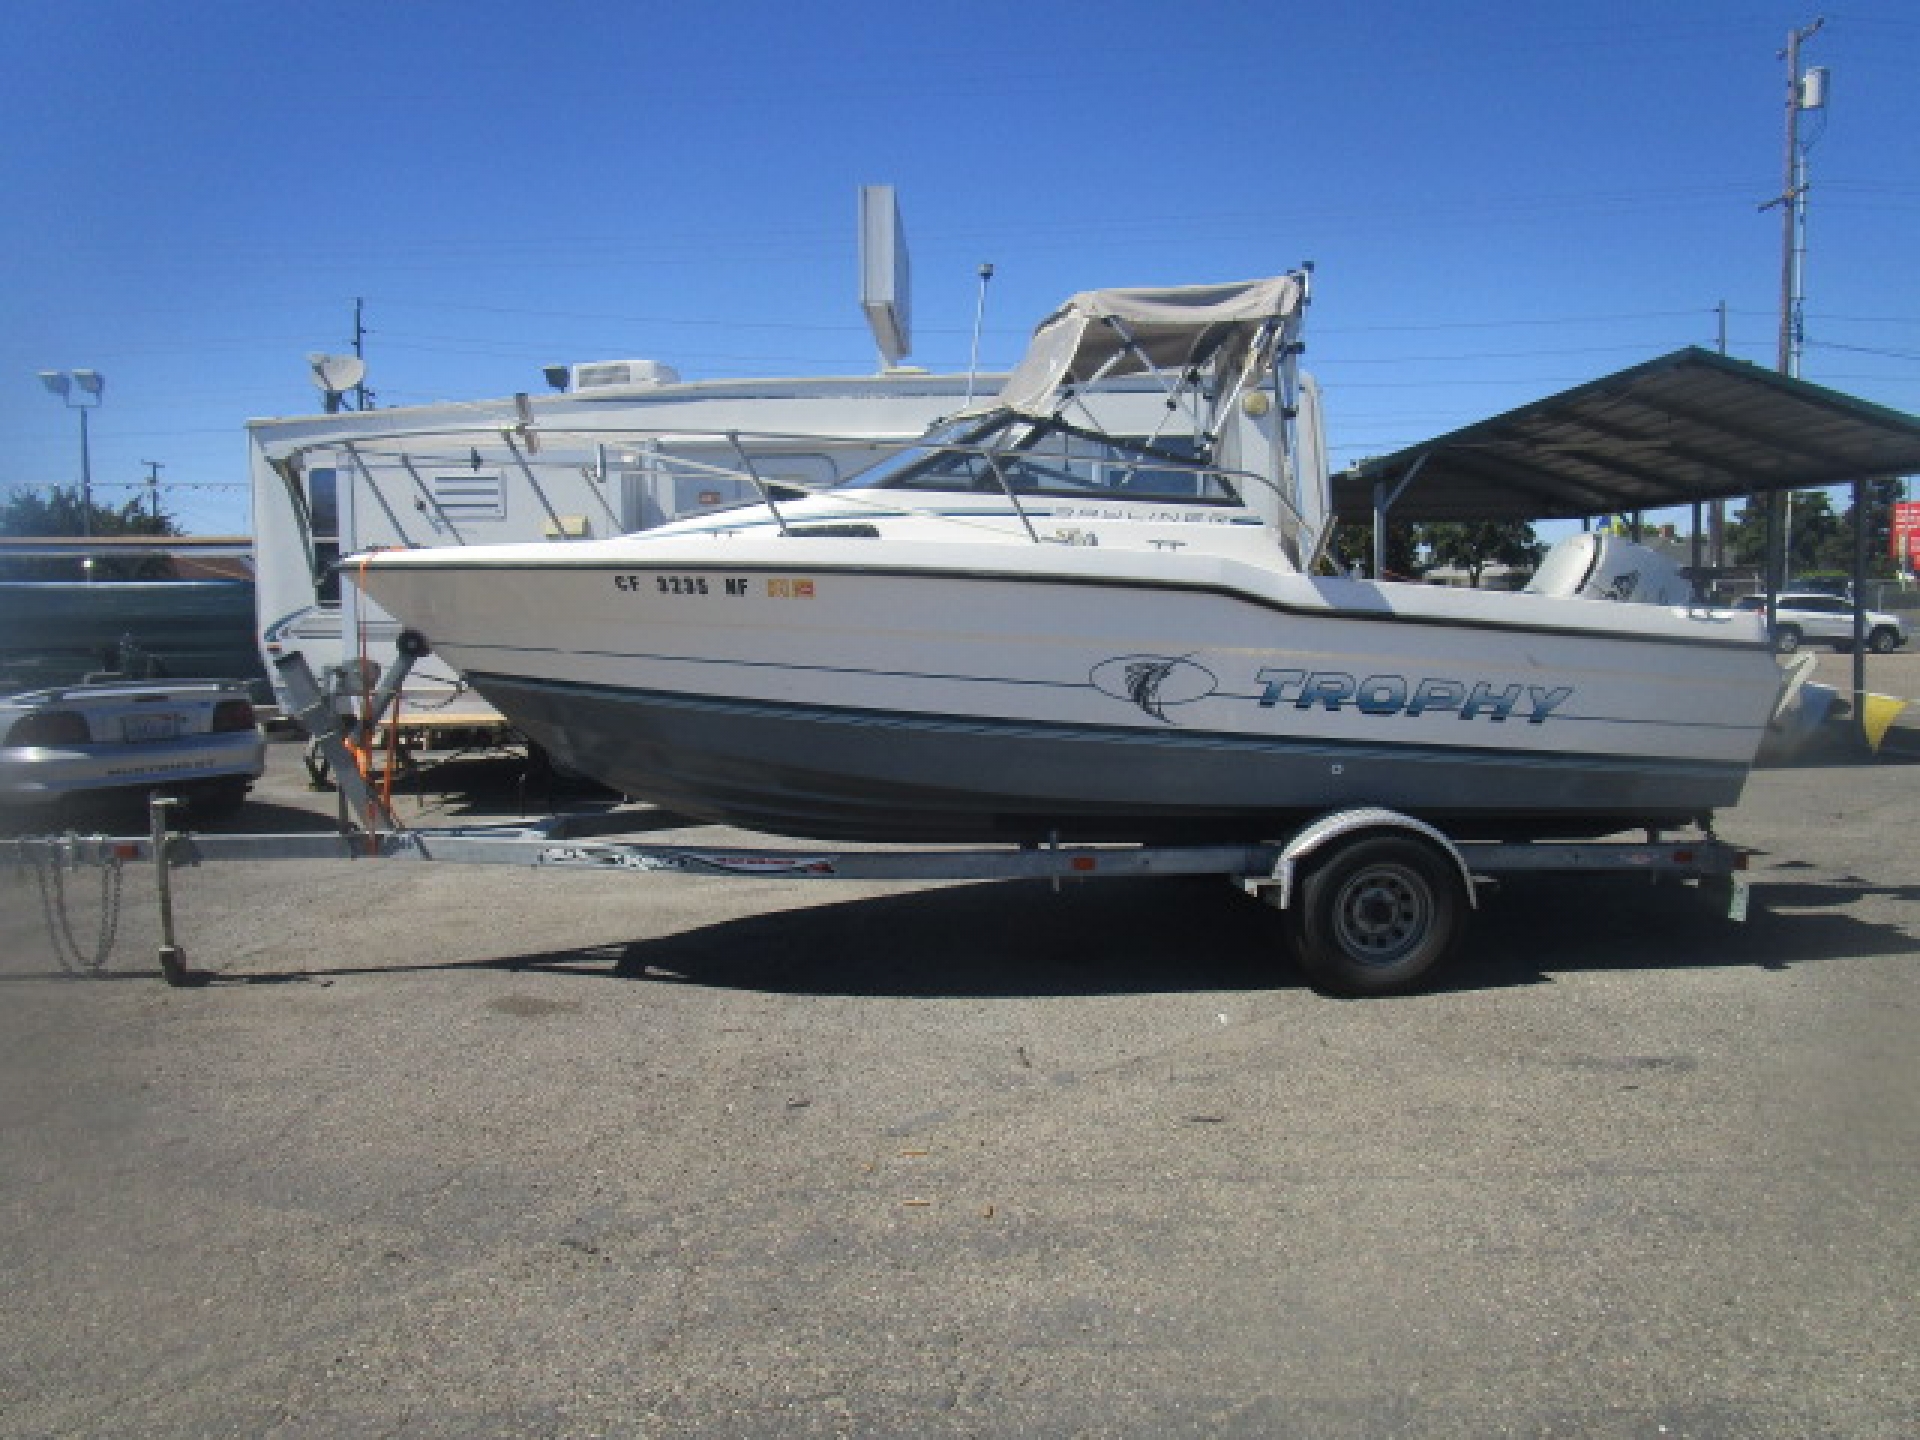 Boat for sale 1987 Bayliner Capri Open Bow 21' in Lodi Stockton CA